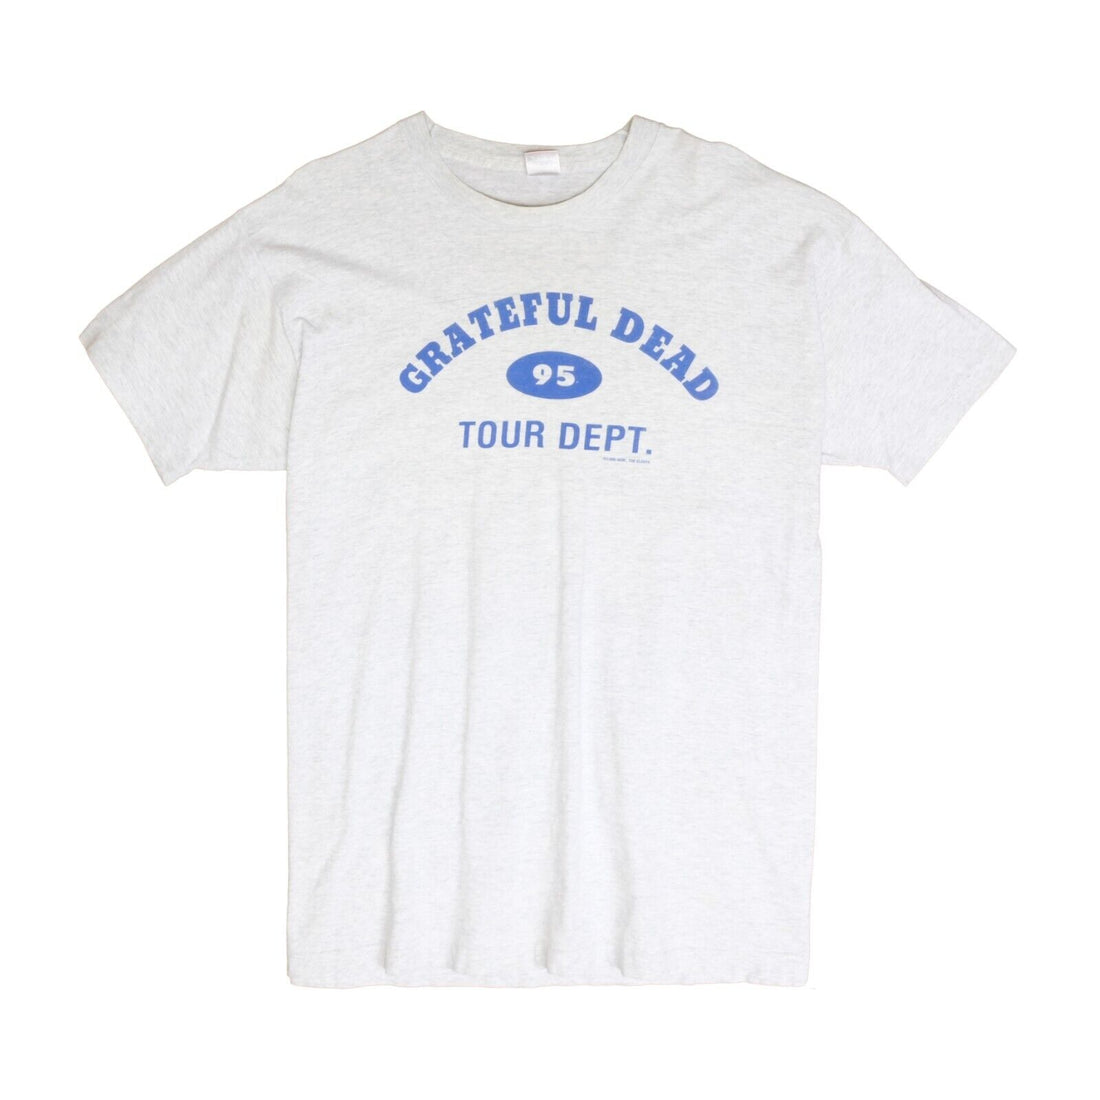 Vintage Grateful Dead Tour Dept T-Shirt Size 2XL Gray Band Tee 1996 90s